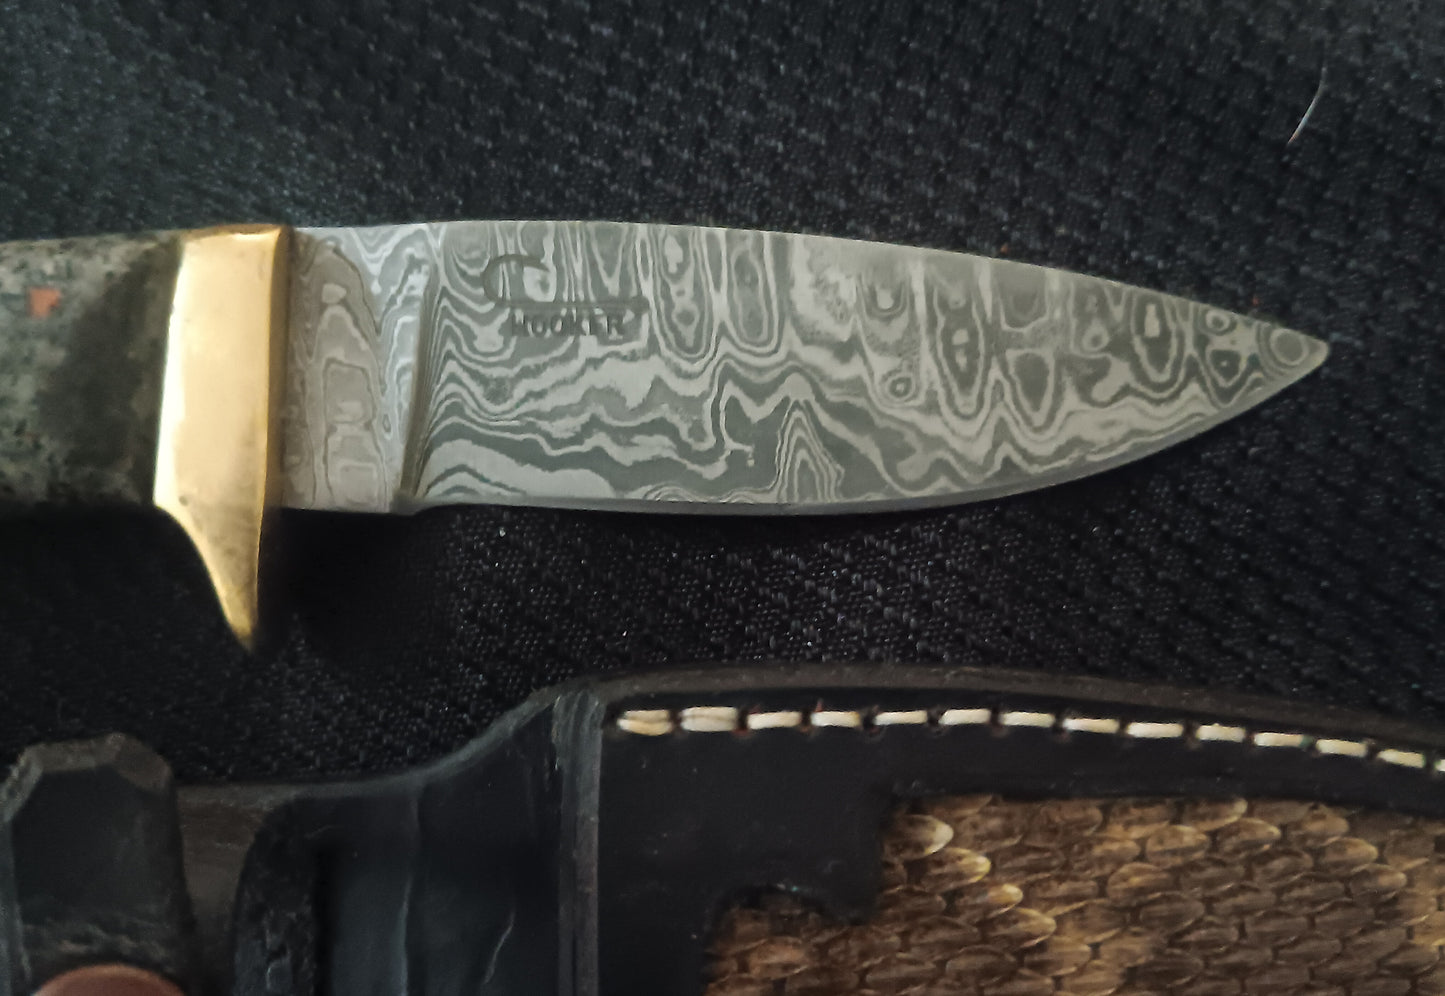 Yooperlight Knife with Damascus blade and Rattlesnake sheath